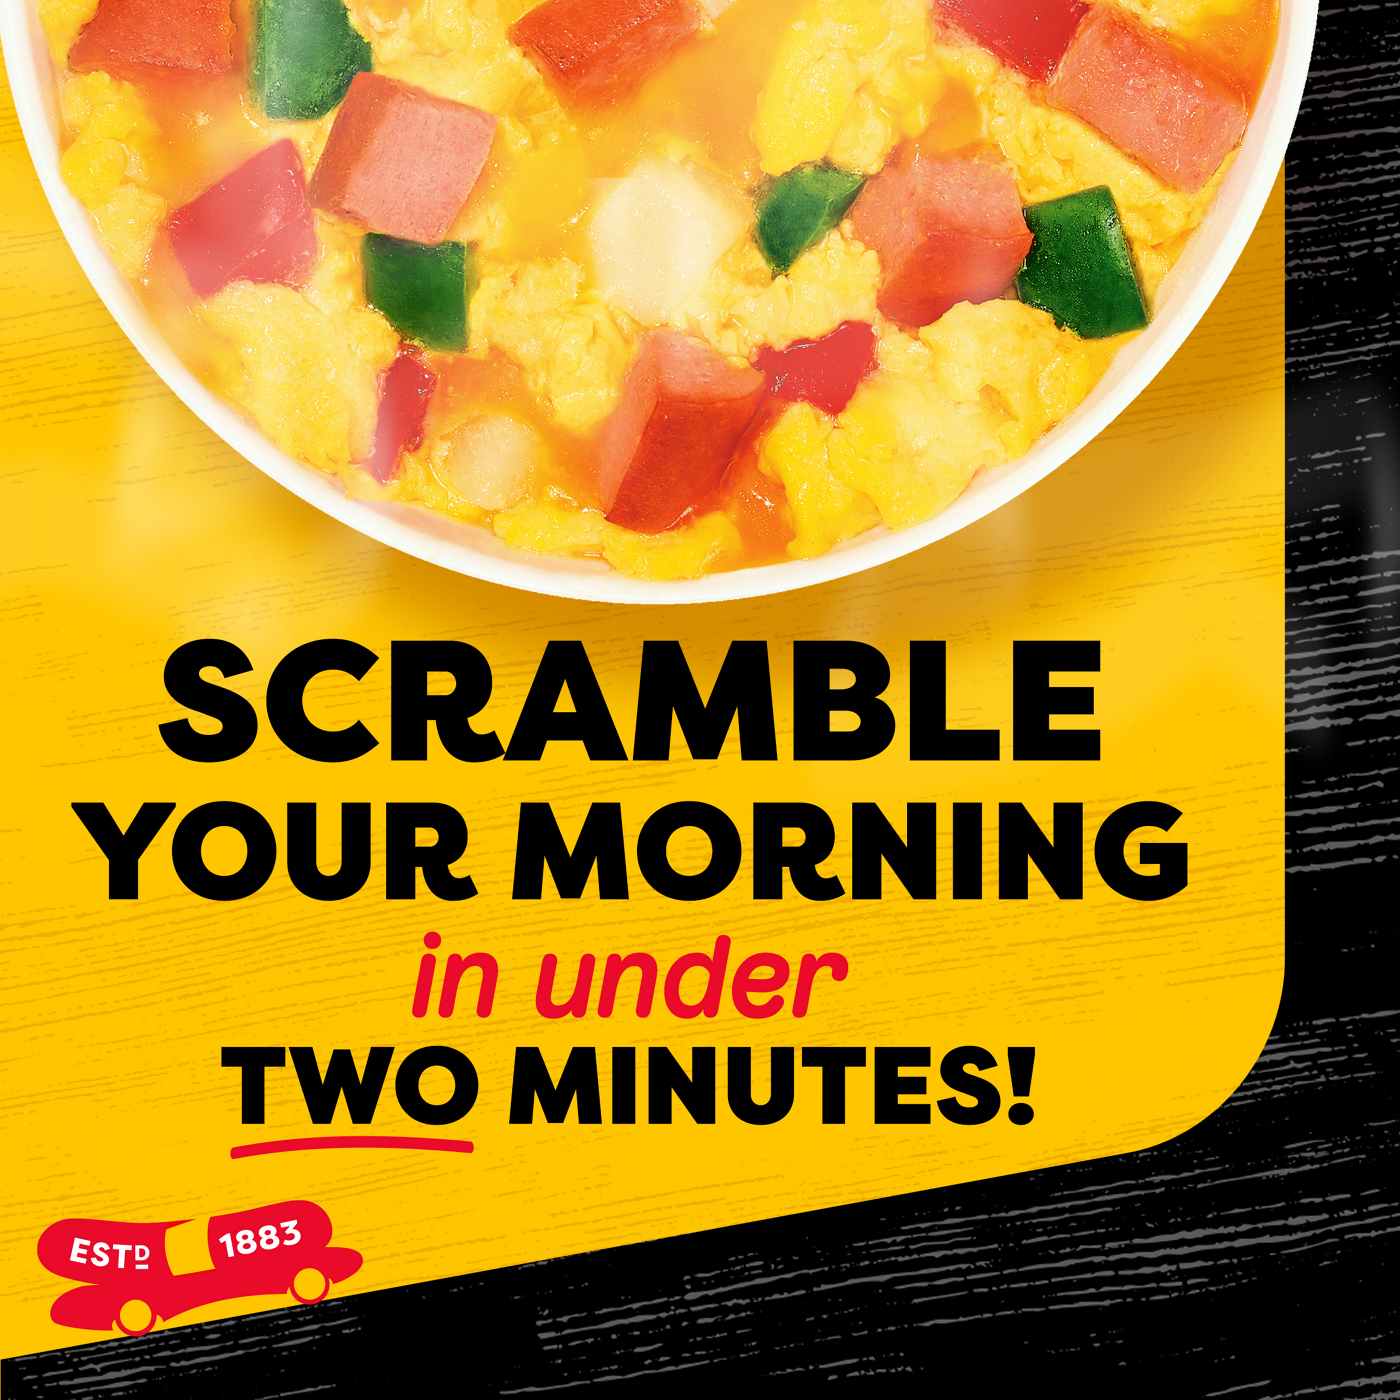 Oscar Mayer Scramblers Breakfast Scramble Kit - Wiener & Cheddar; image 3 of 5